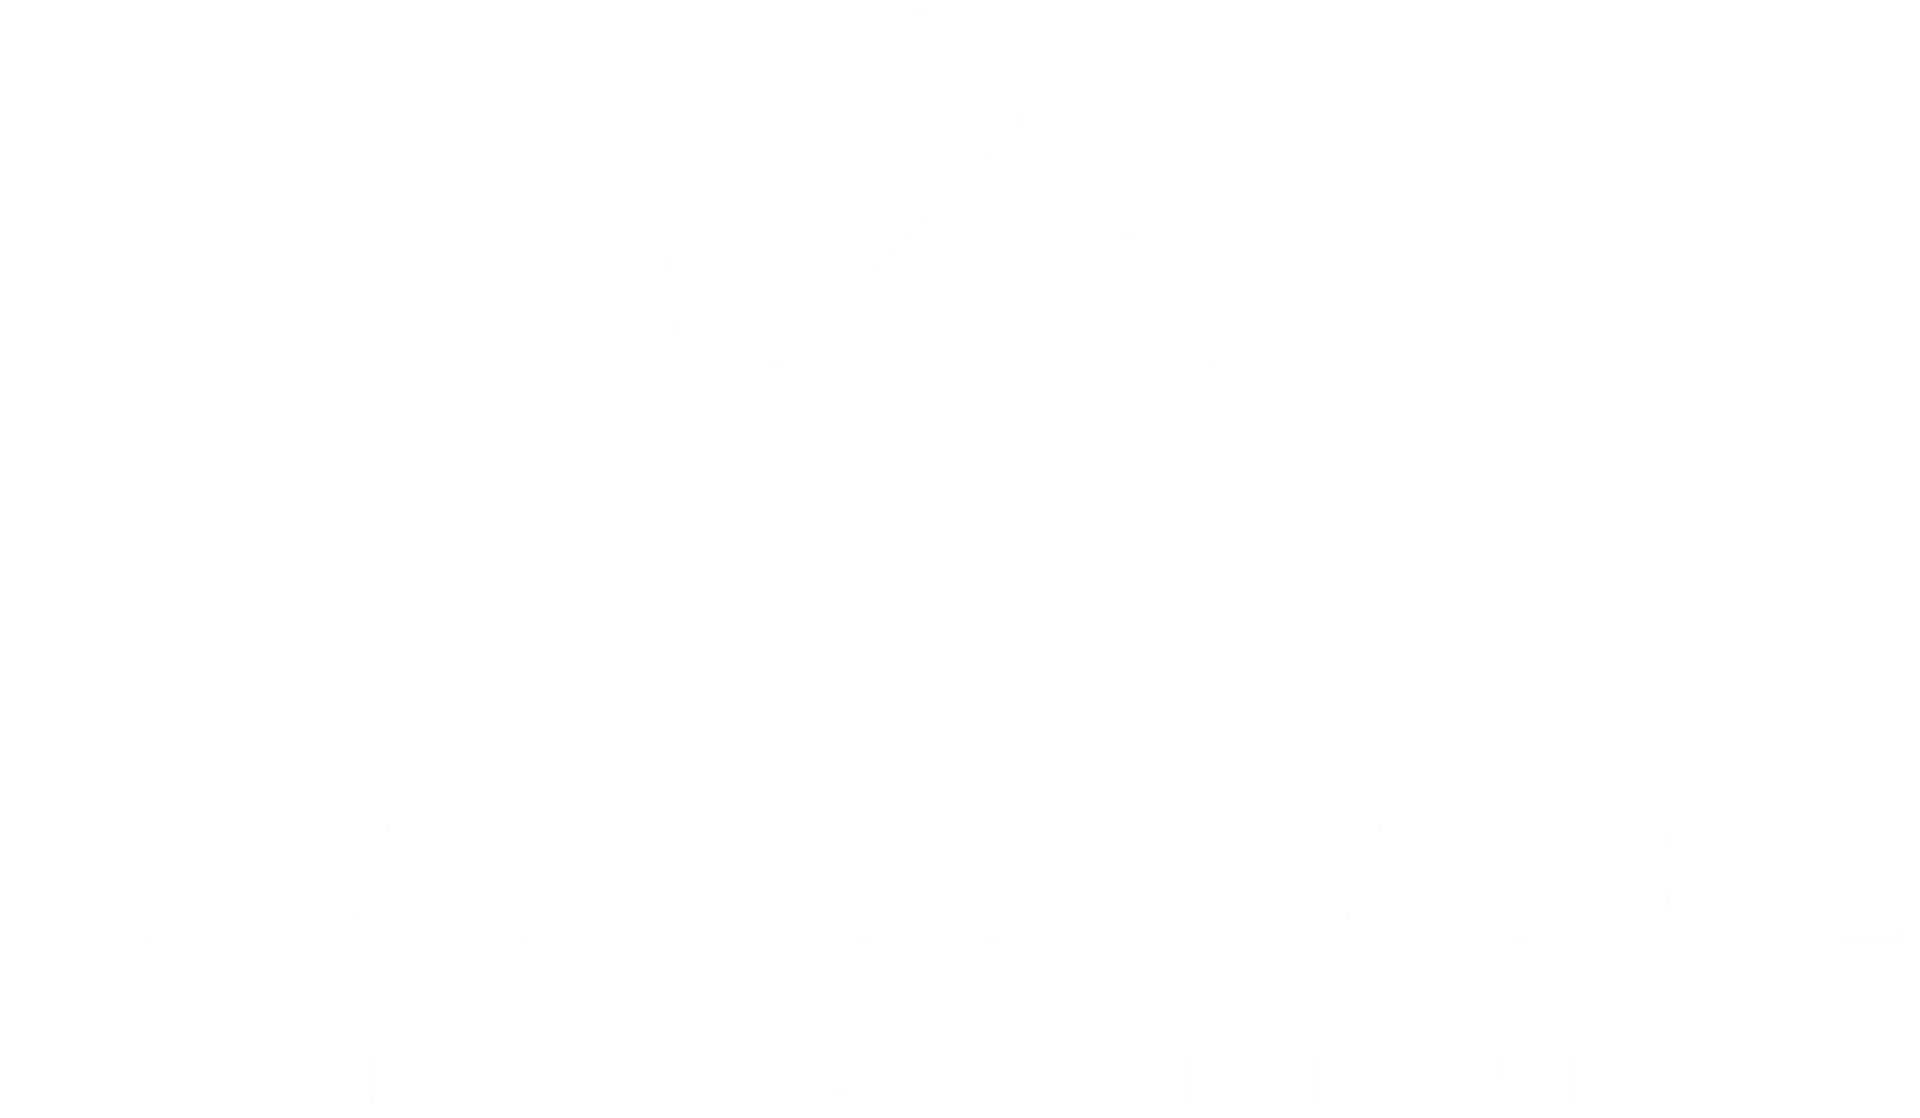 Vila na Praia Foz Luxury Apartments